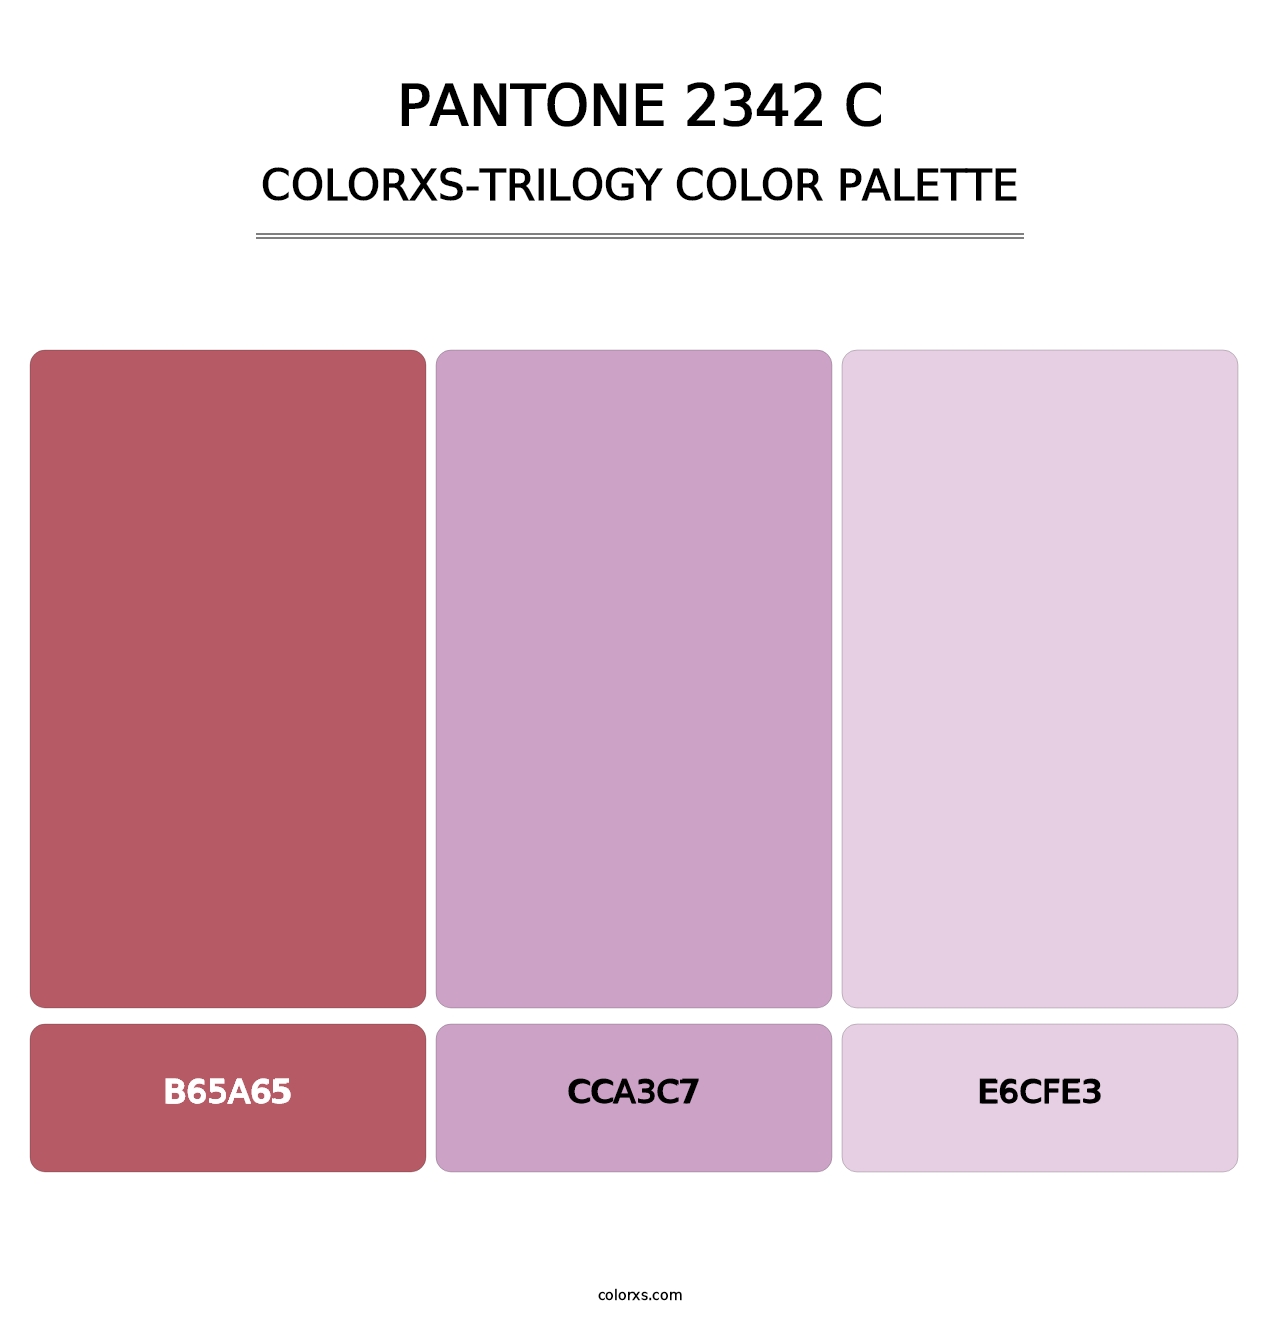 PANTONE 2342 C - Colorxs Trilogy Palette